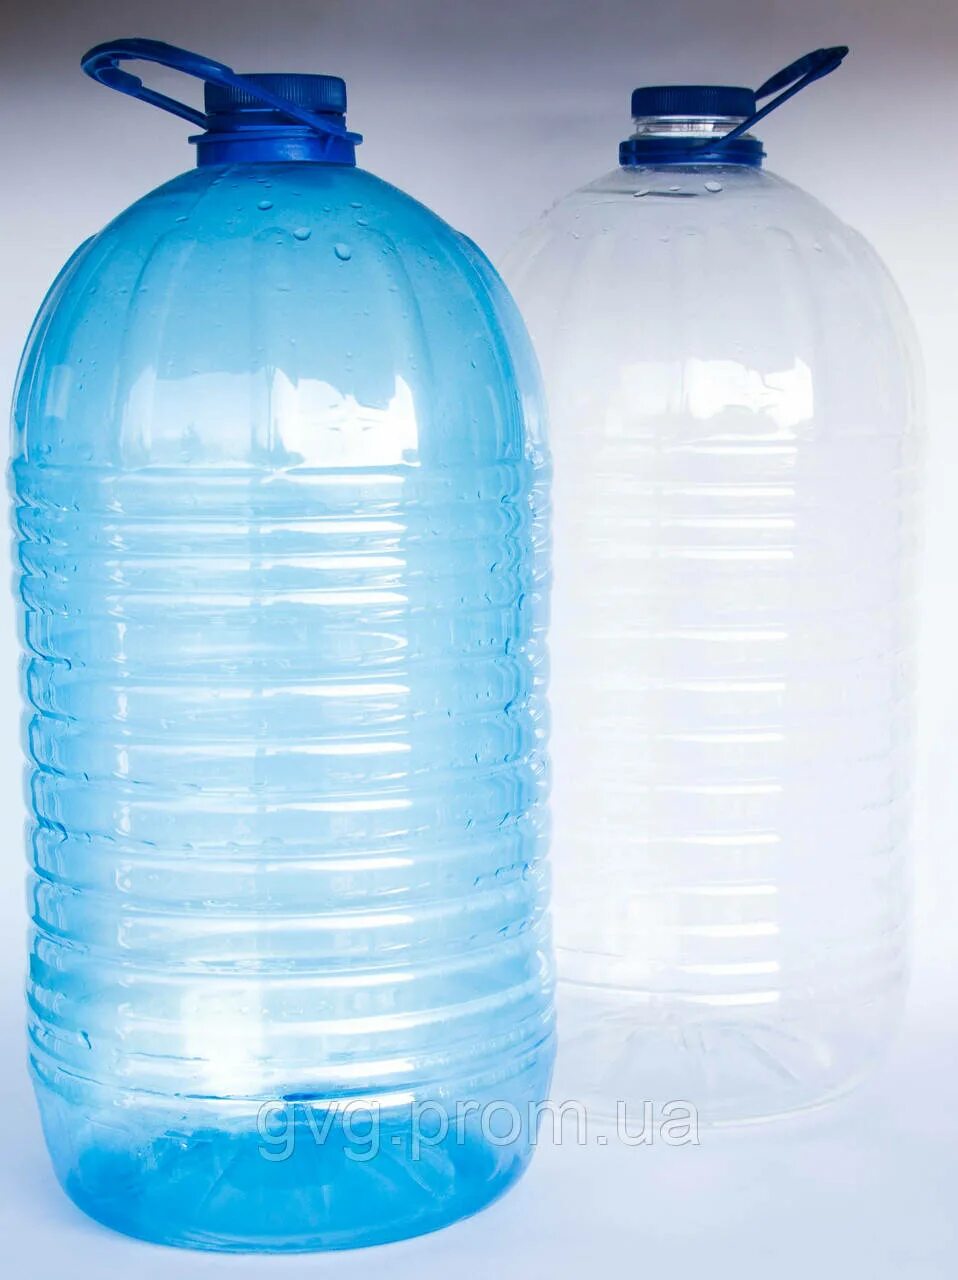 12 литровая вода. ПЭТ бутылка 10 л. Бутыль 10л ПЭТ 4630057. 10 Литровые пластиковые бутылки. Бутылка 10 литров пластиковая.